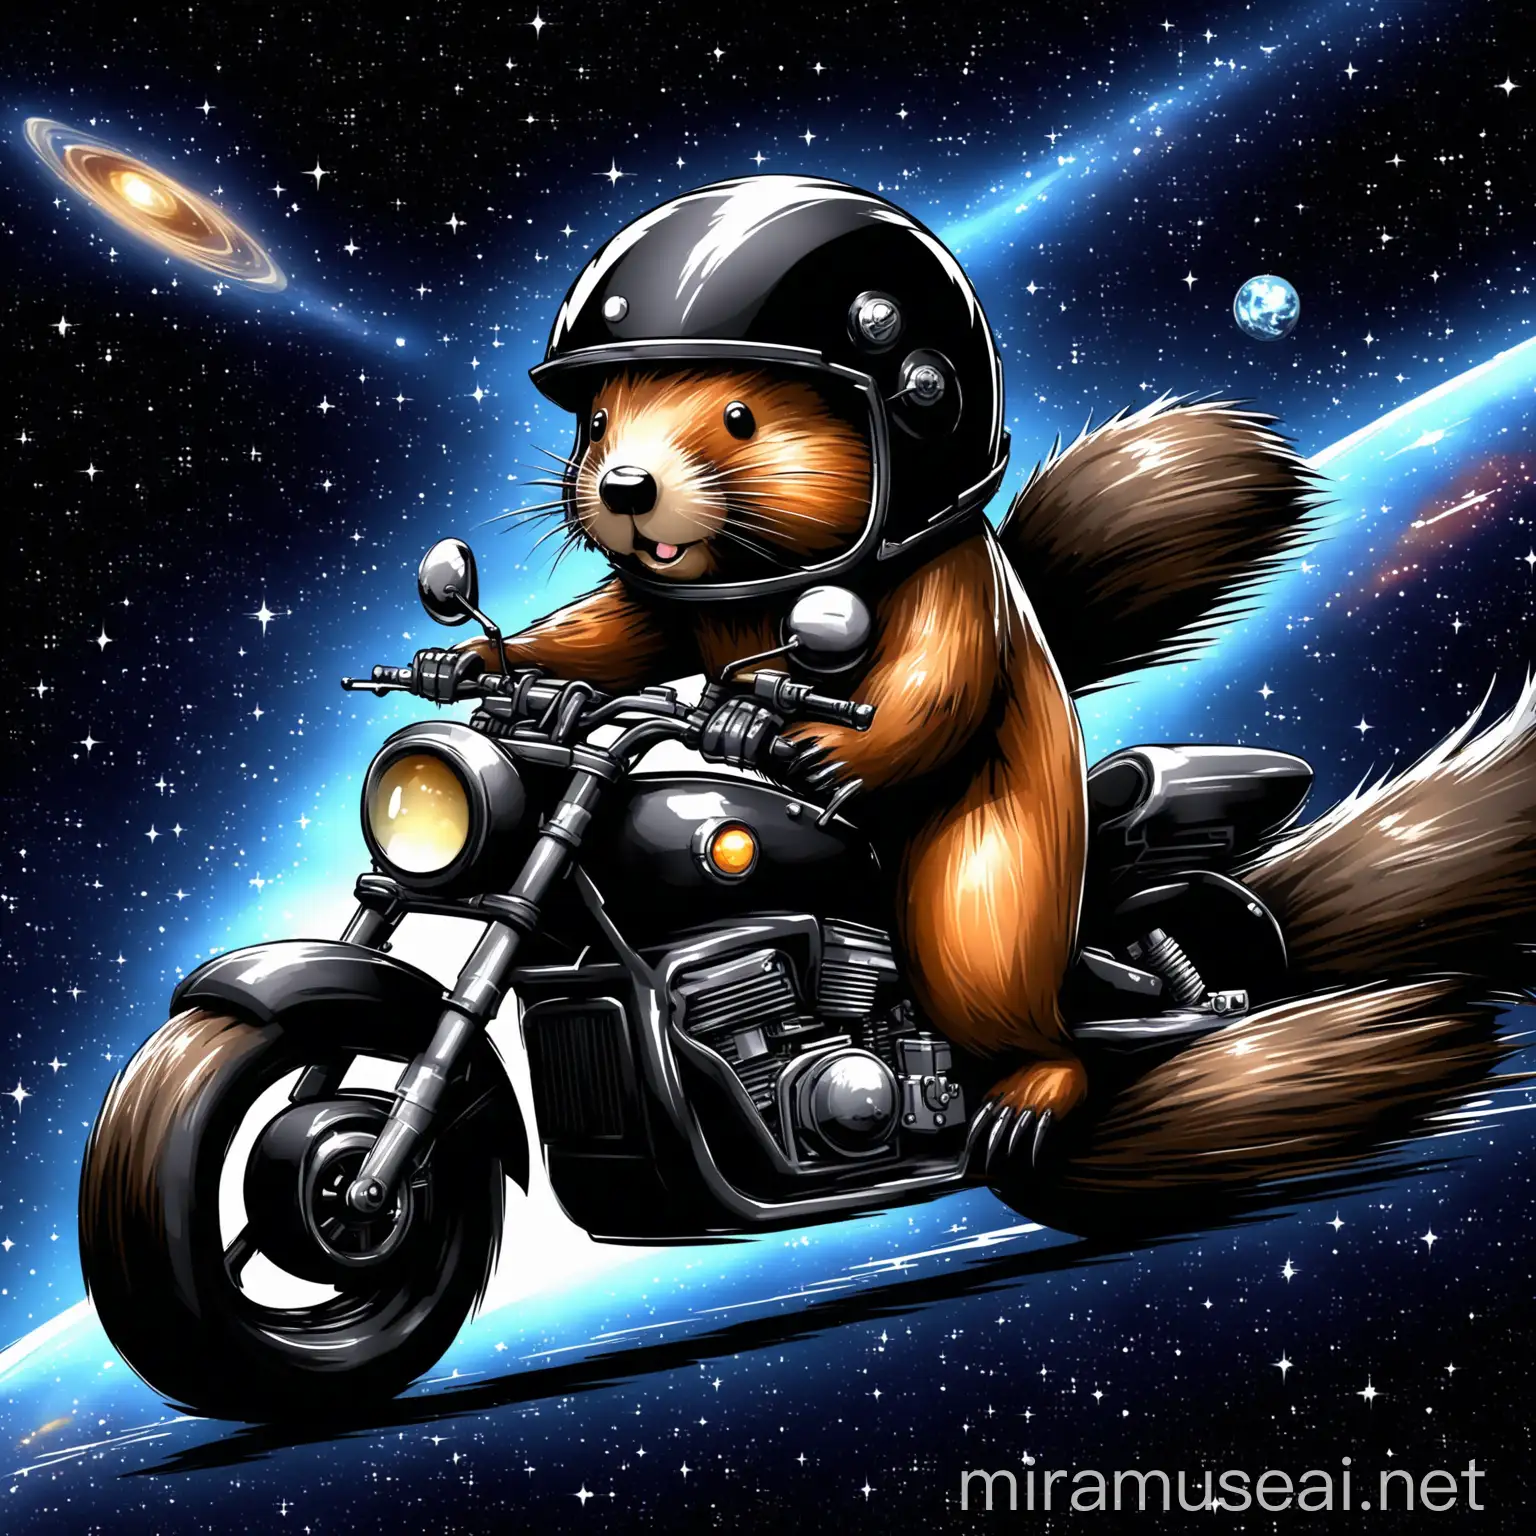 Beaver in Cool Motor Helmet on Cosmic Black Motorcycle